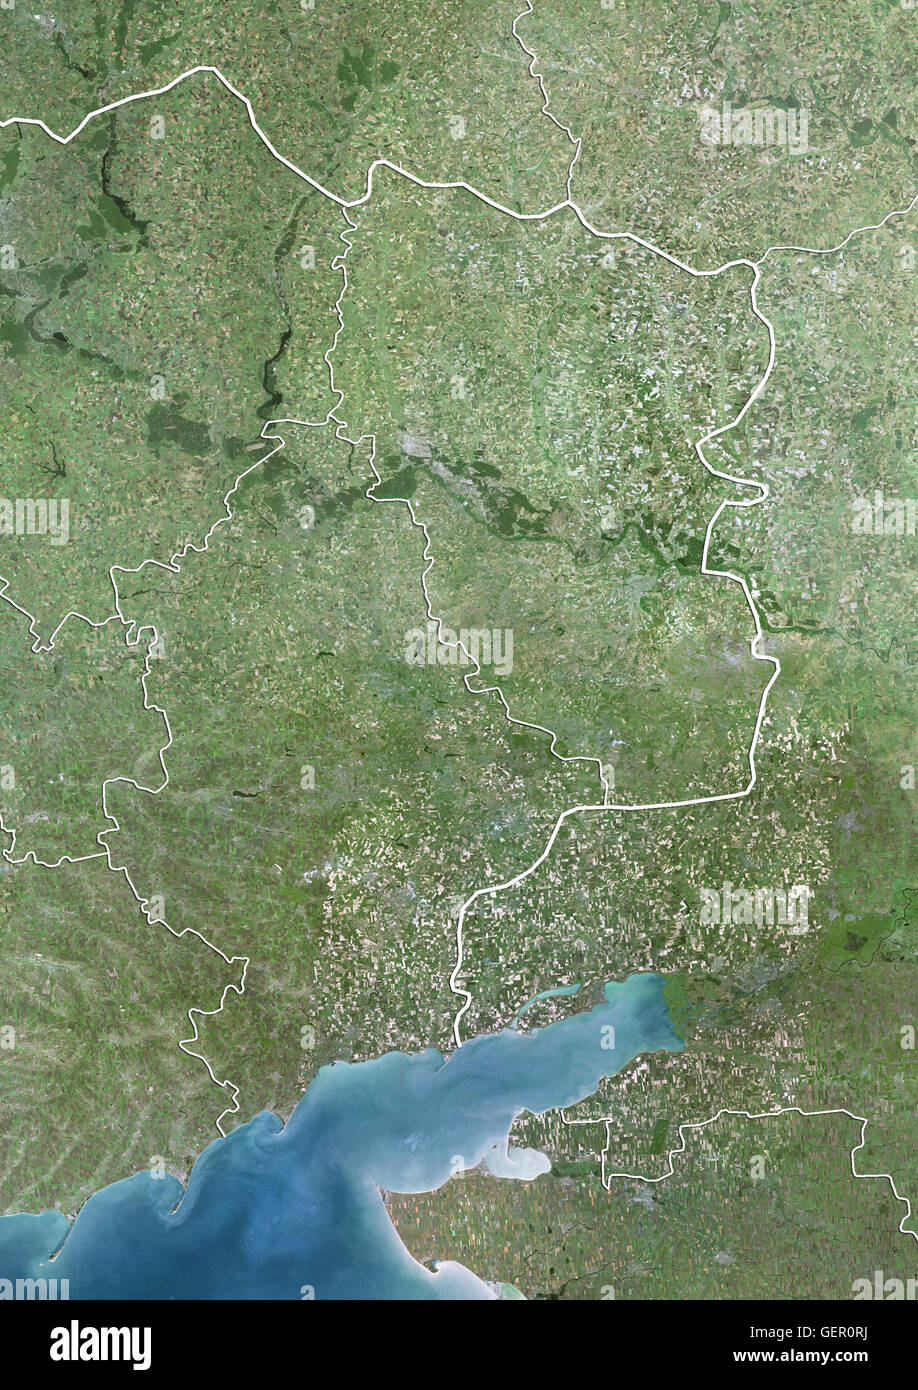 Satelliten-Ansicht der östlichen Ukraine (mit Ländergrenzen). Das Bild zeigt die Donbass-Region mit Oblast Donezk im Westen und Luhansk Oblast, im Osten an der Grenze zu Russland. Dieses Bild wurde aus Daten von Landsat-Satelliten erworben erstellt. Stockfoto